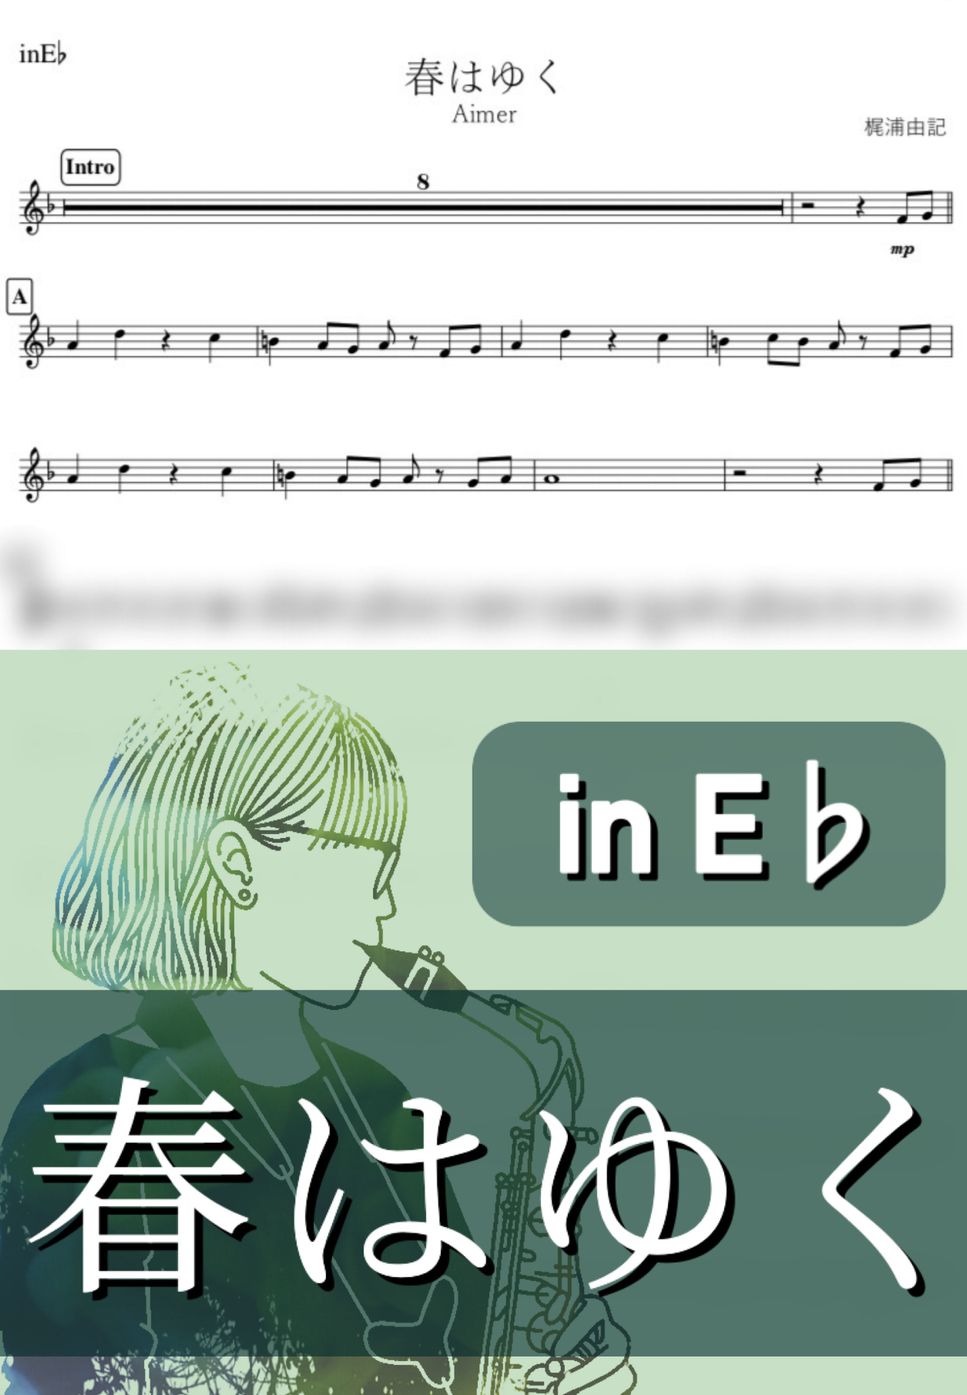 Aimer - 春はゆく (E♭) by kanamusic